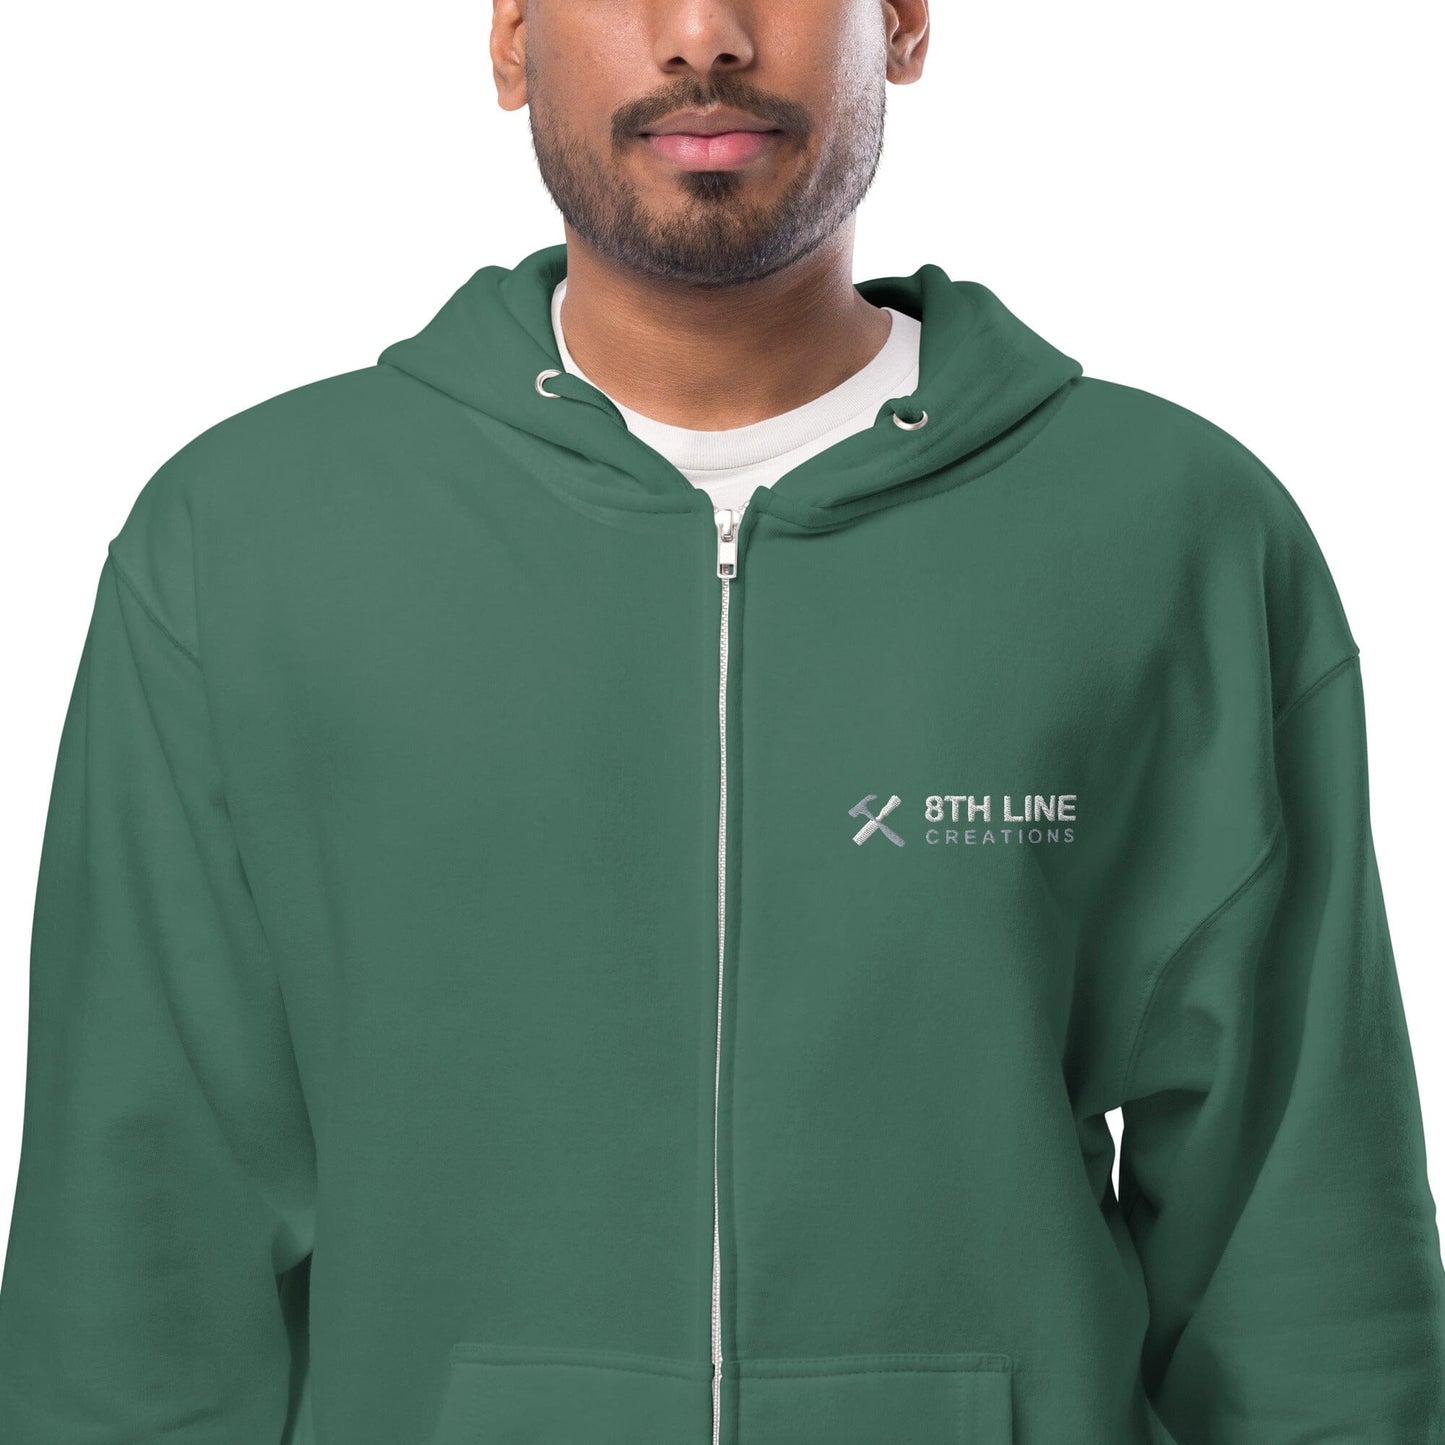 8th line Unisex fleece zip up hoodie 8th Line Creations Alpine Green S 